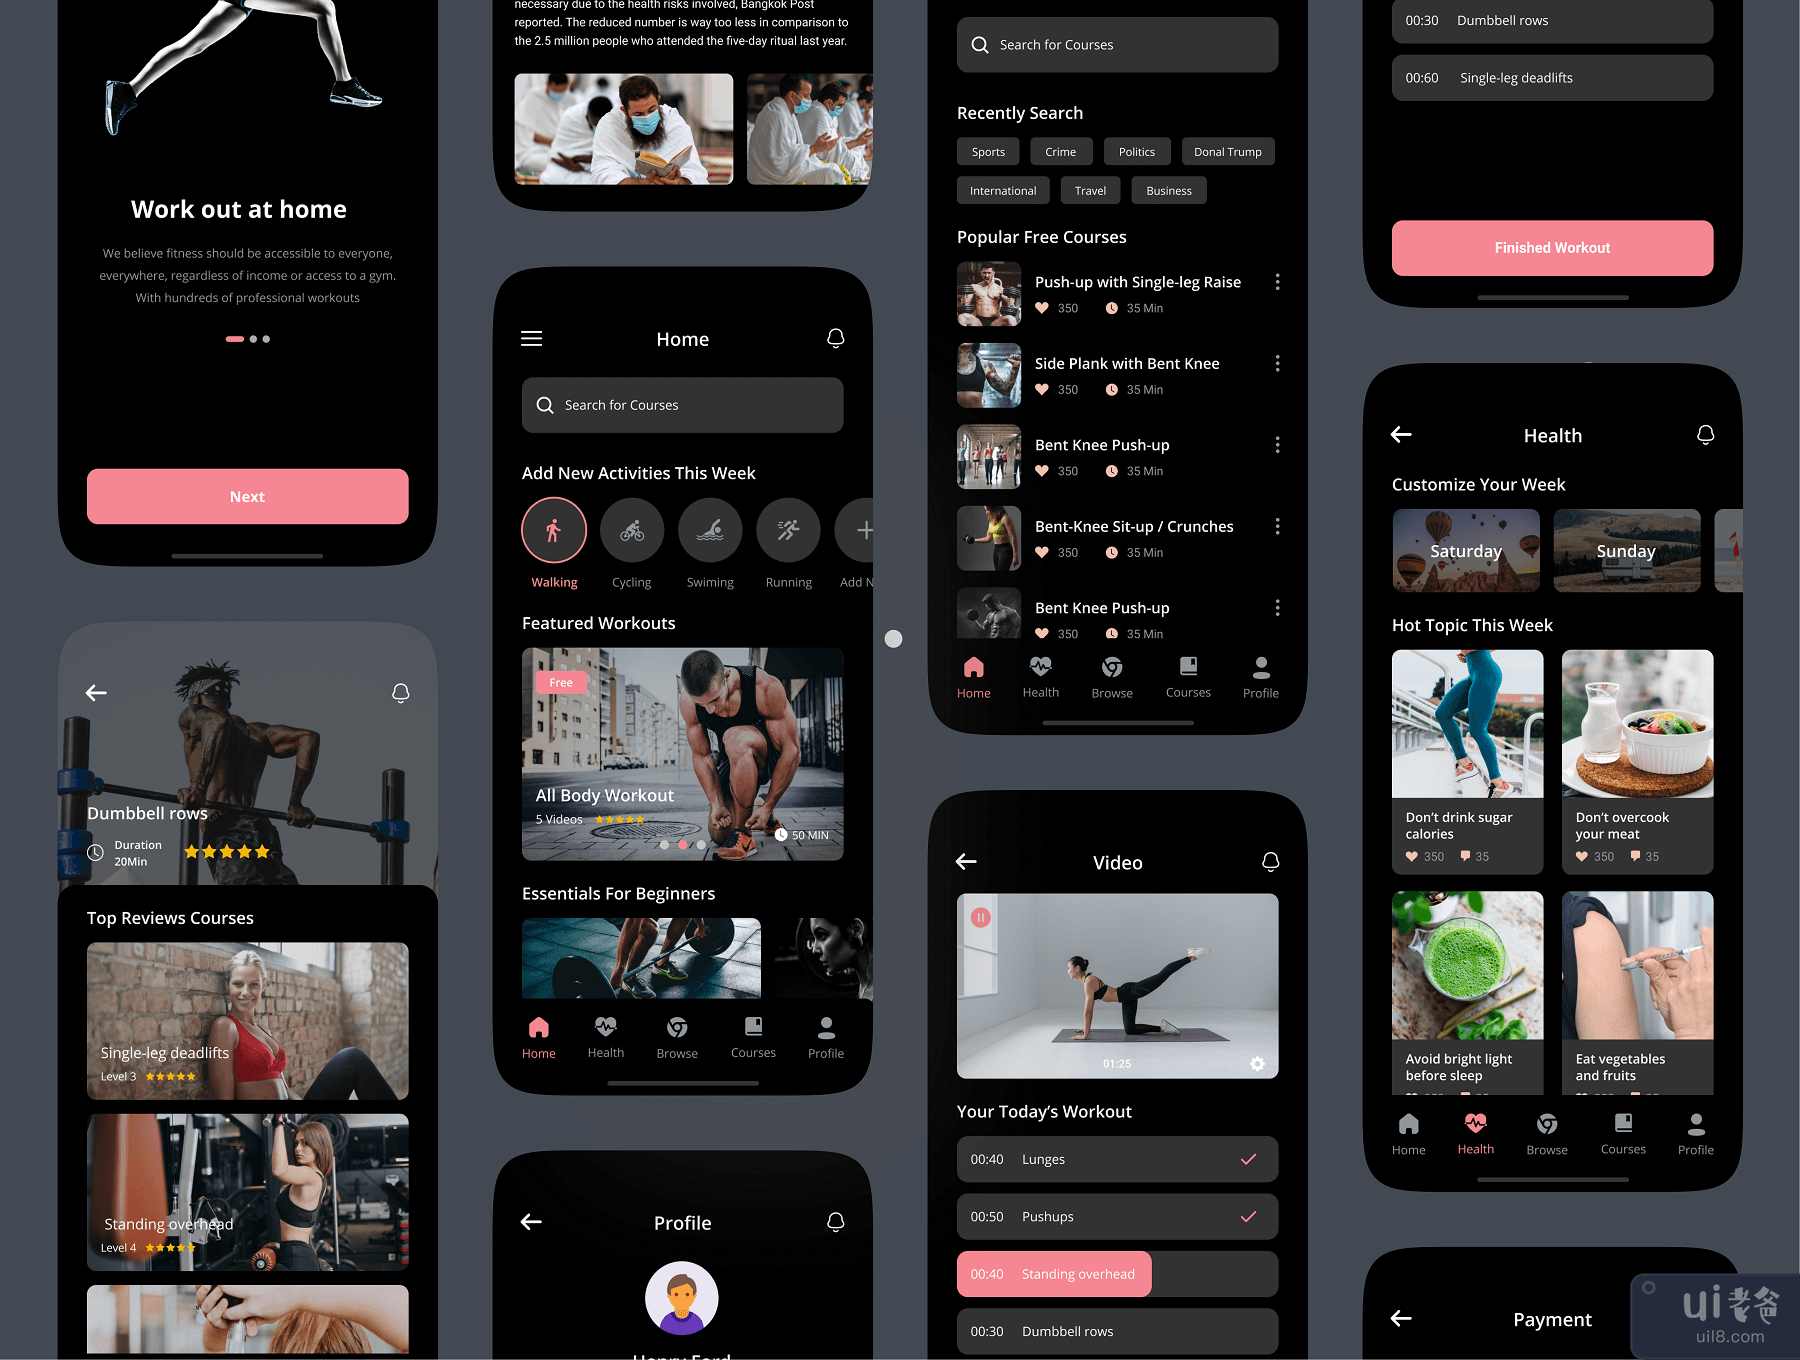 健身与锻炼应用程序 UI 工具包 (Fitness & Workout App UI Kit)插图6